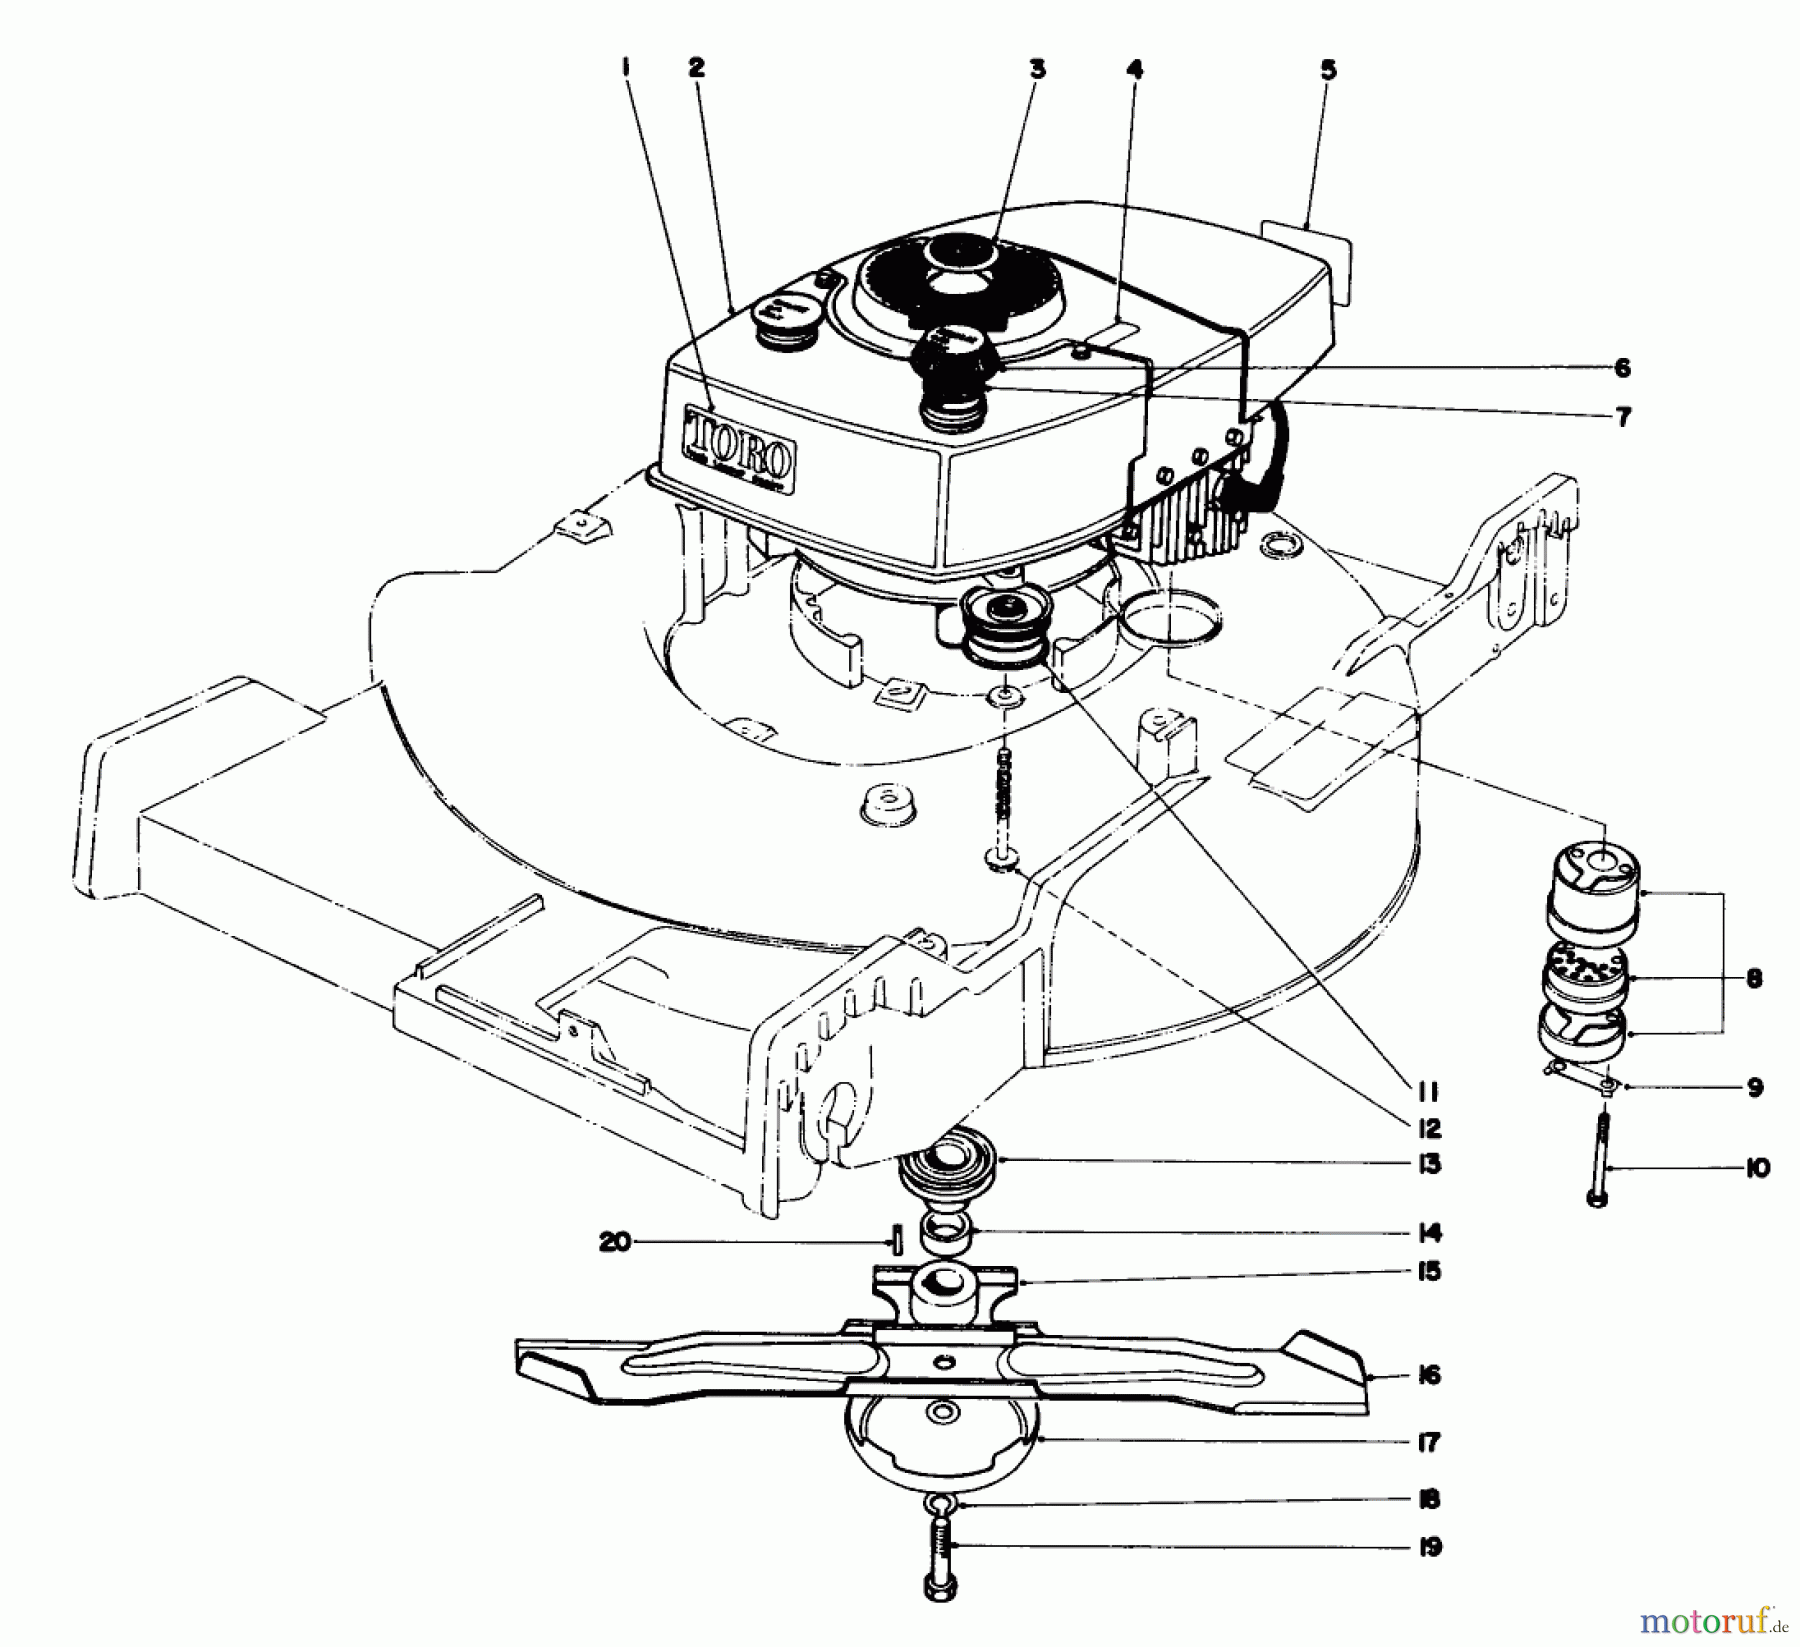  Toro Neu Mowers, Walk-Behind Seite 1 20660 - Toro Lawnmower, 1974 (4000001-4999999) ENGINE ASSEMBLY MODEL NO. 20550